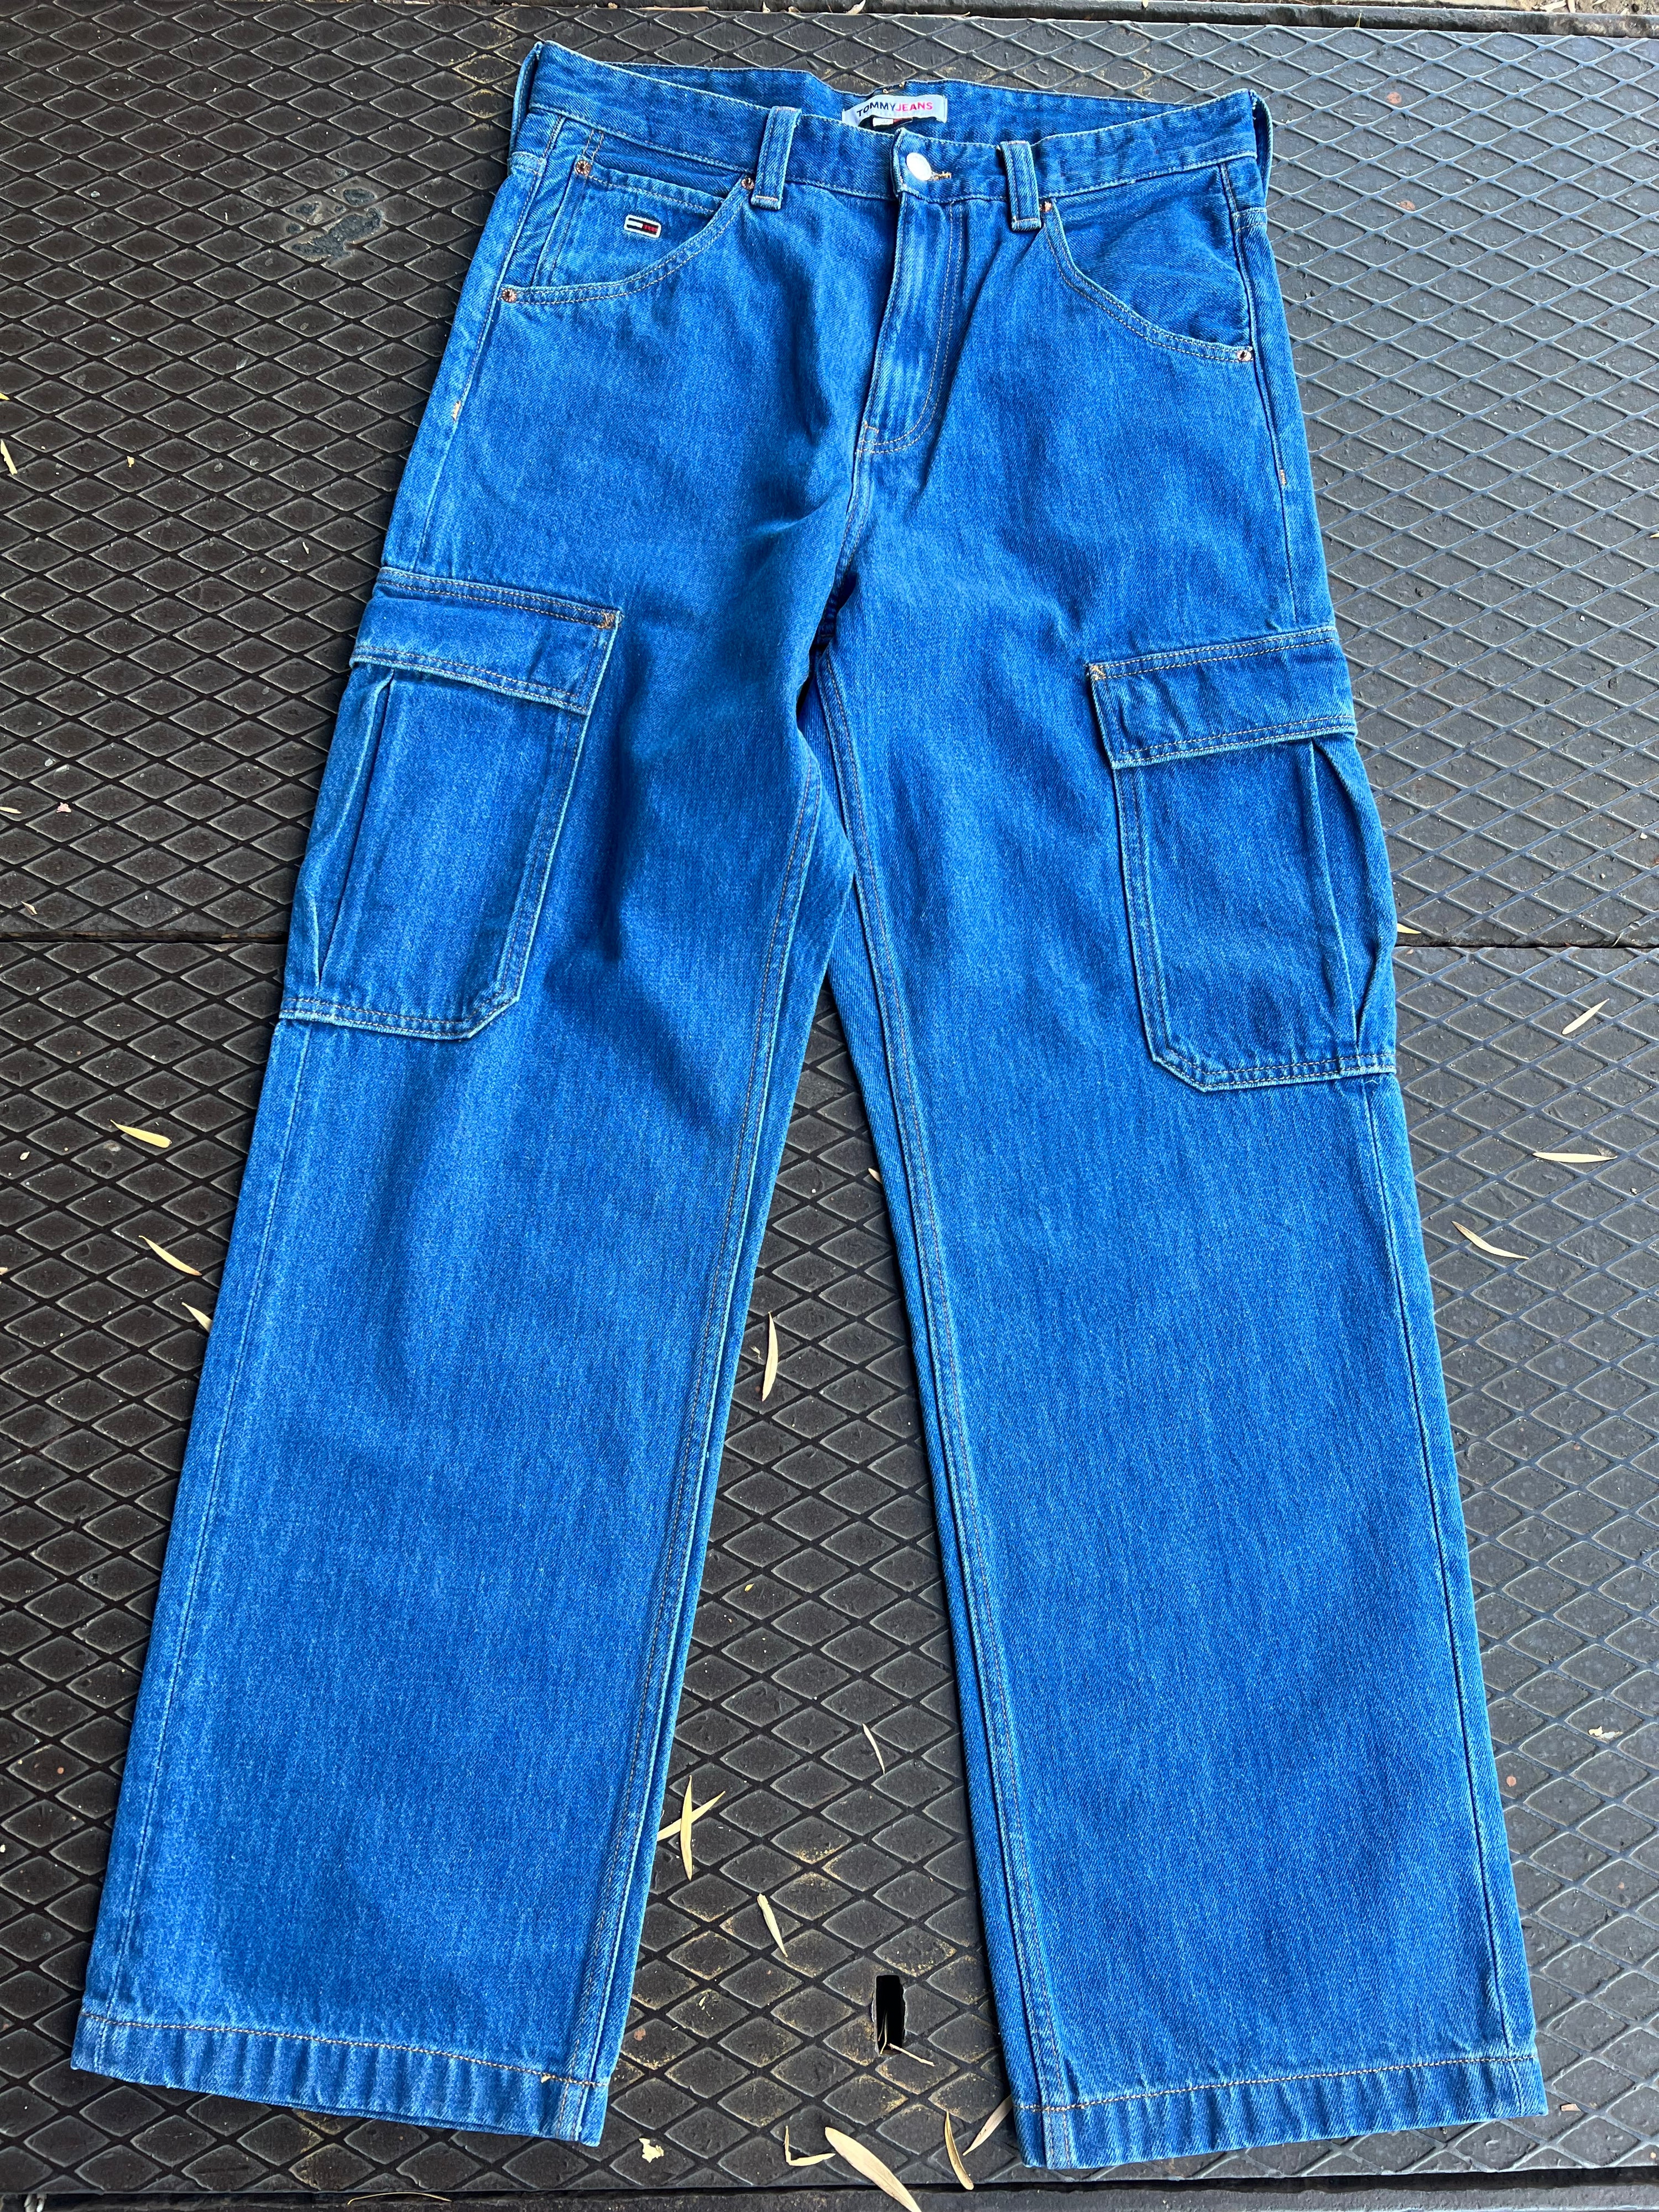 32 - Tommy Jeans LB Denim Jeans 32x32